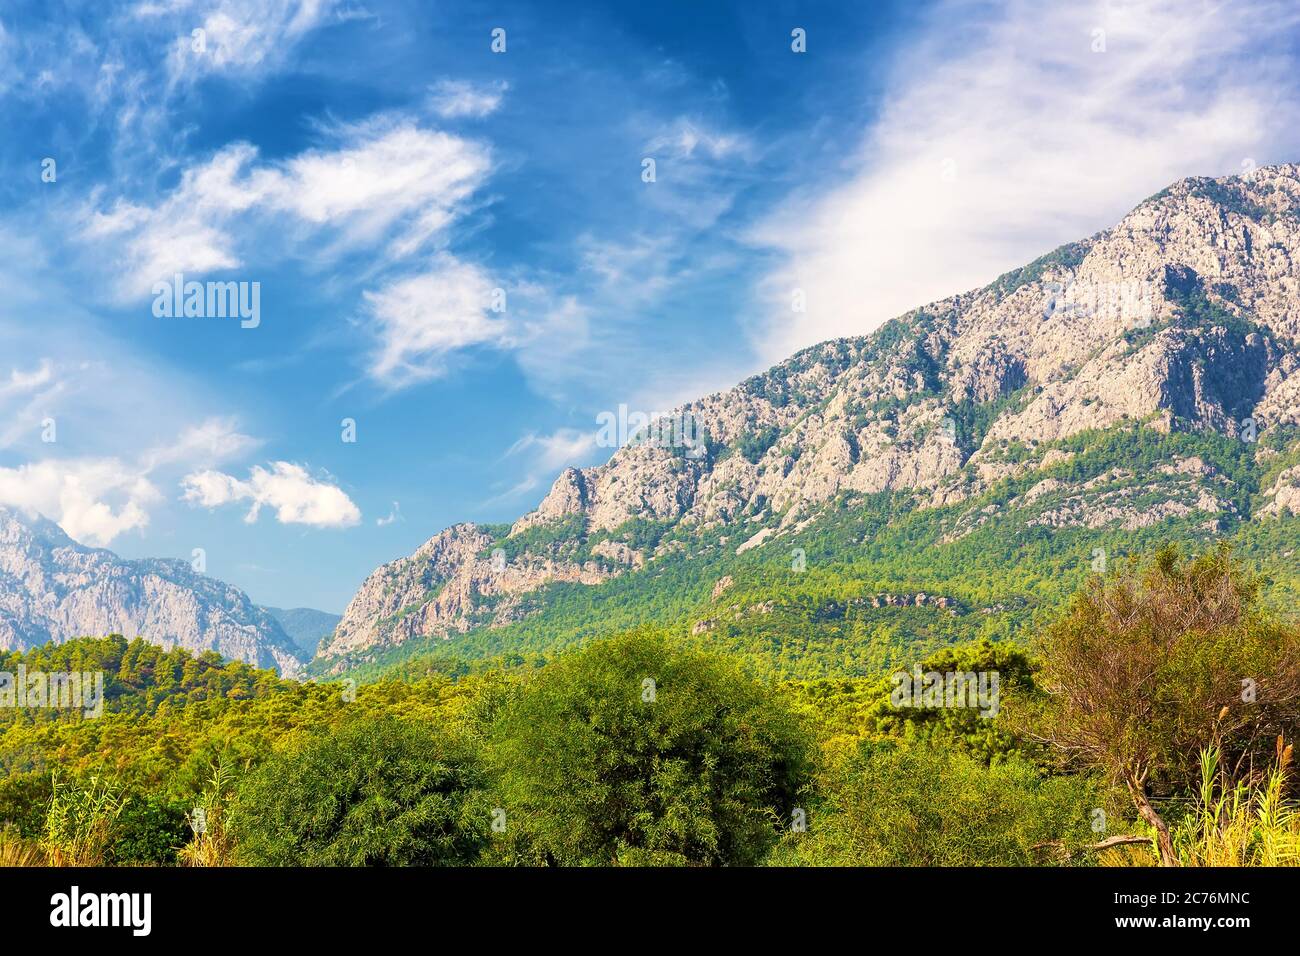 Magnifique paysage de forêt de montagne. Kemer, Turquie Banque D'Images